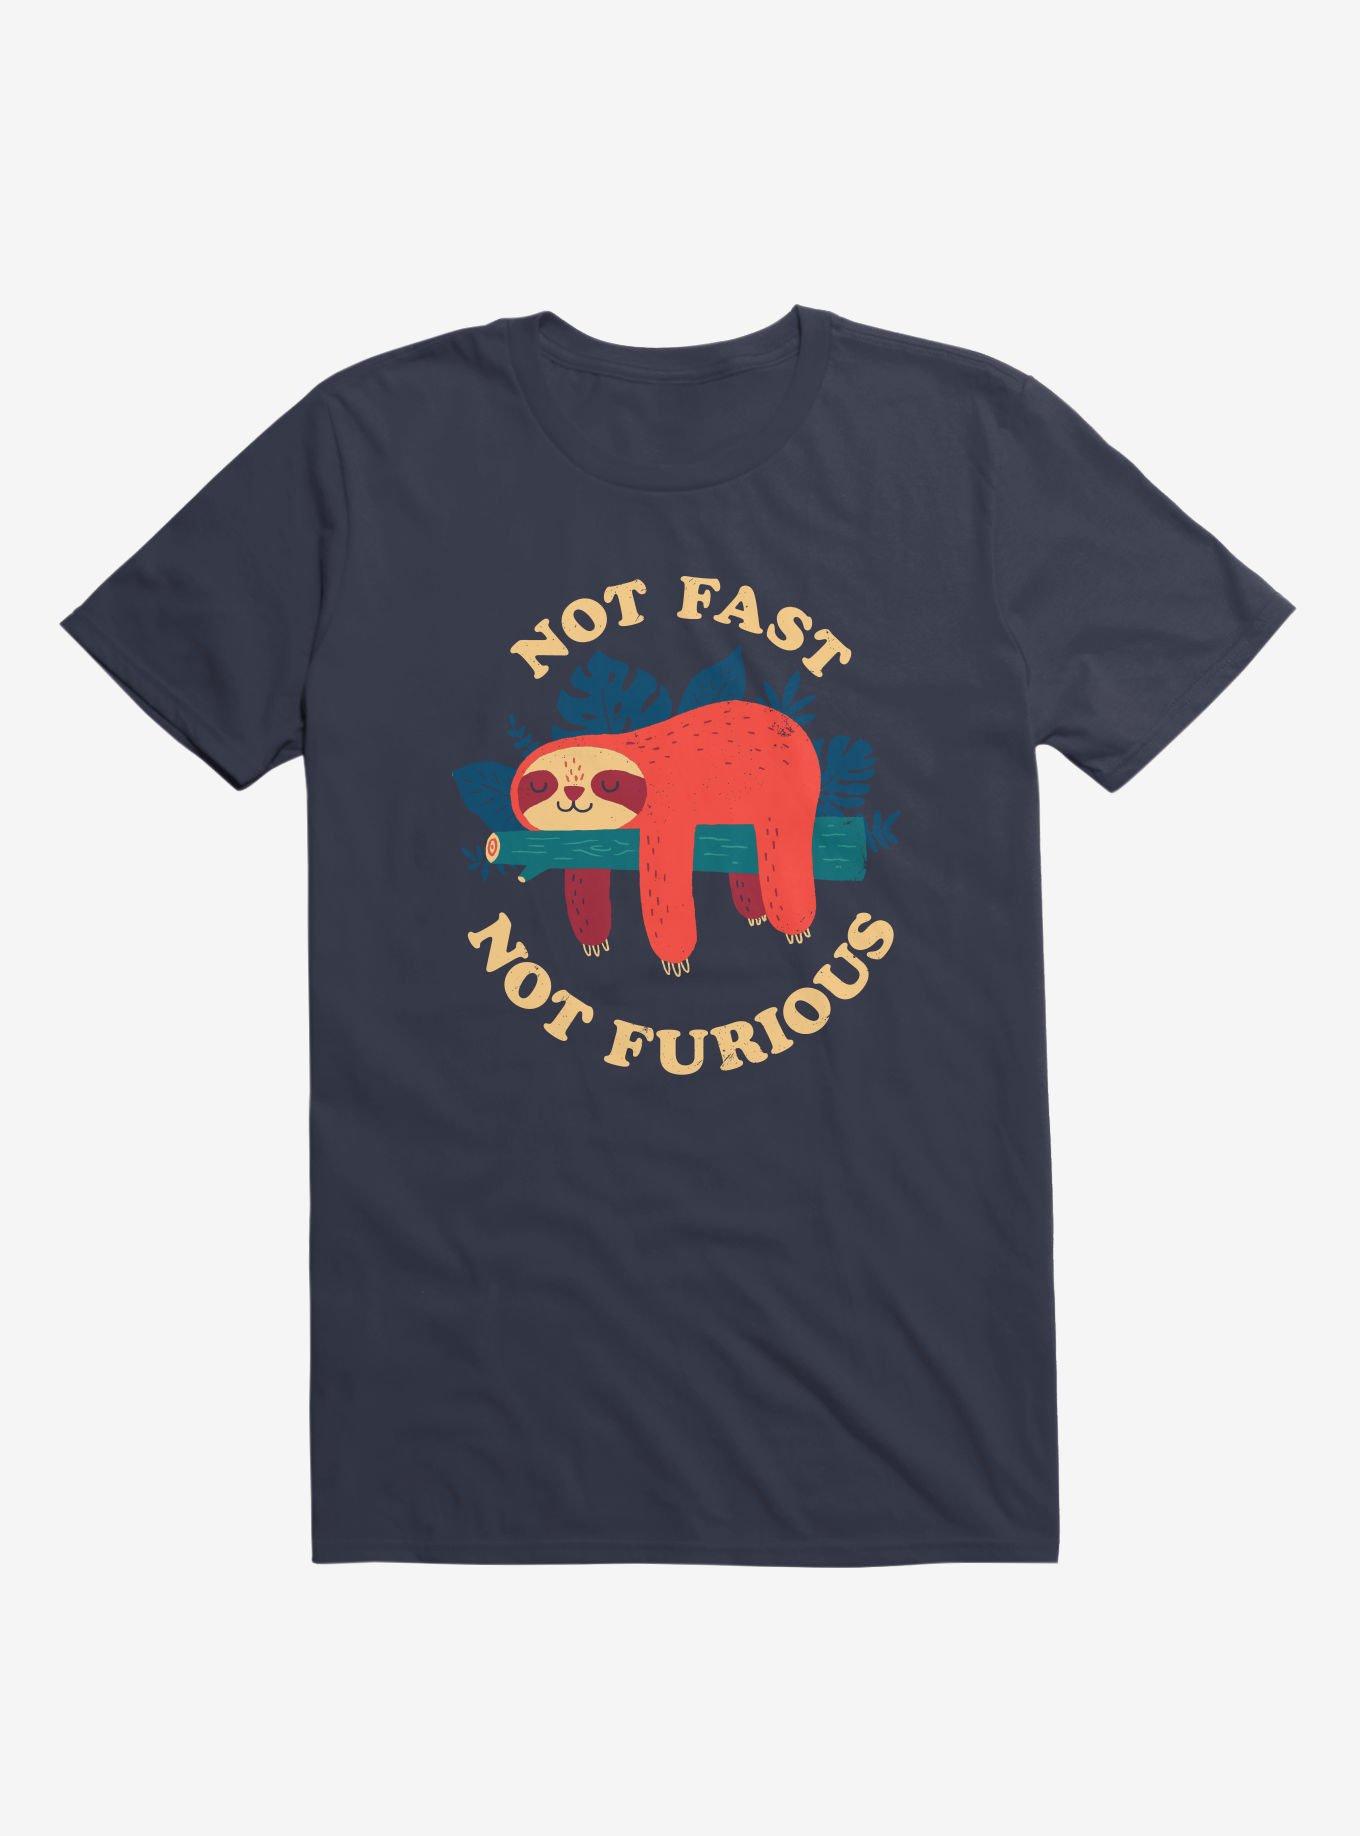 Not Fast, Furious T-Shirt